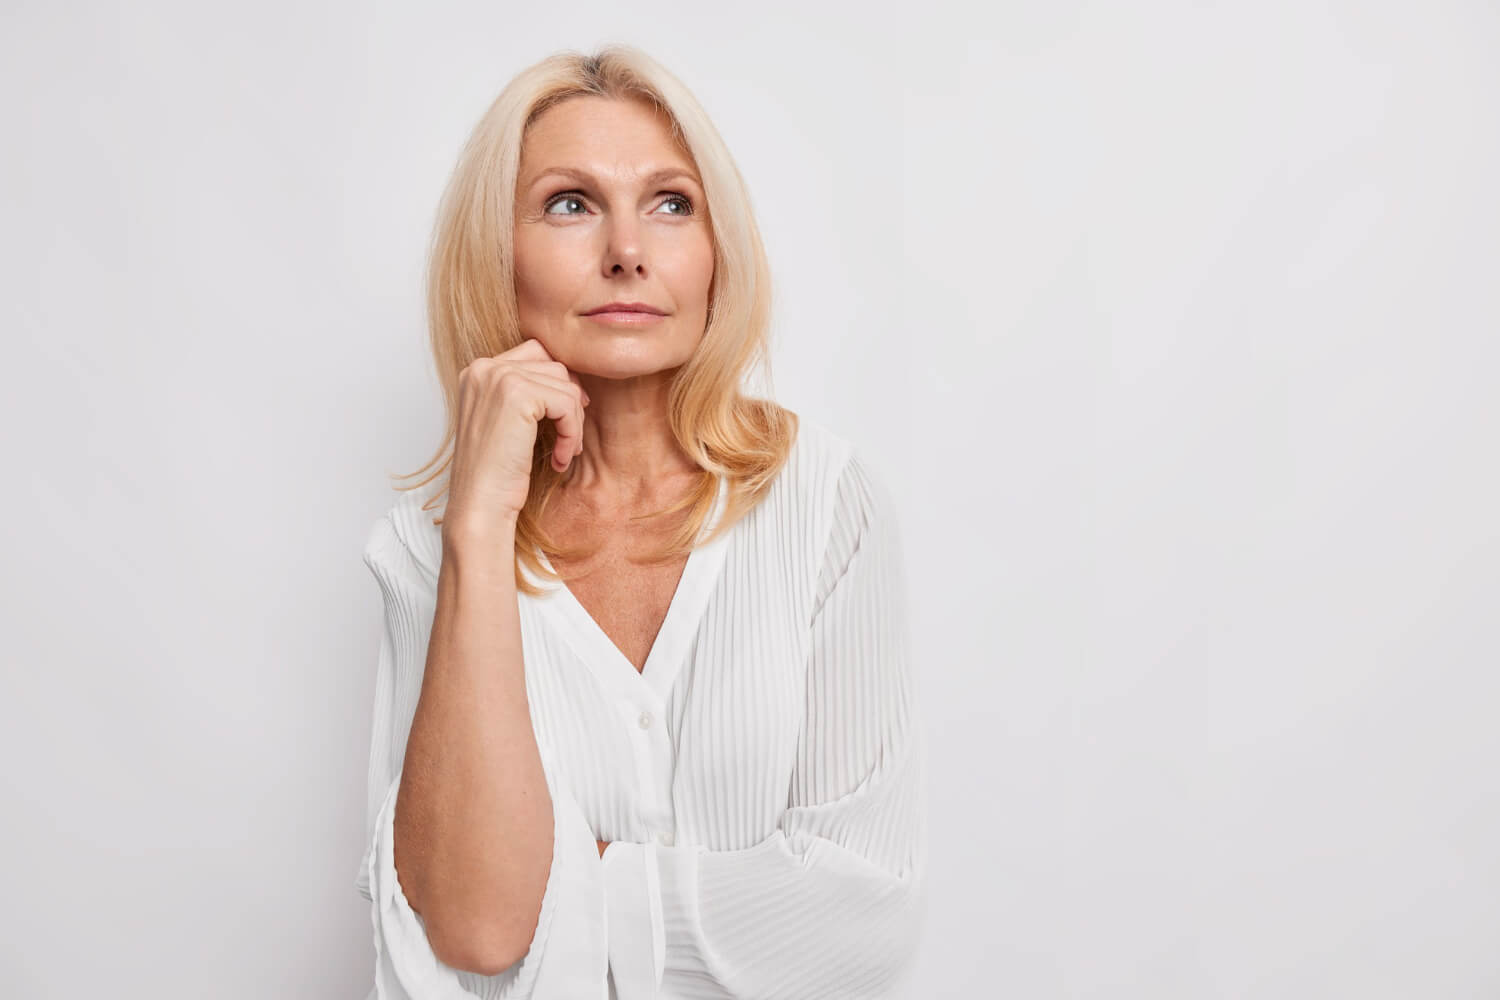 Enterate de qué enfermedades trae la menopausia y más